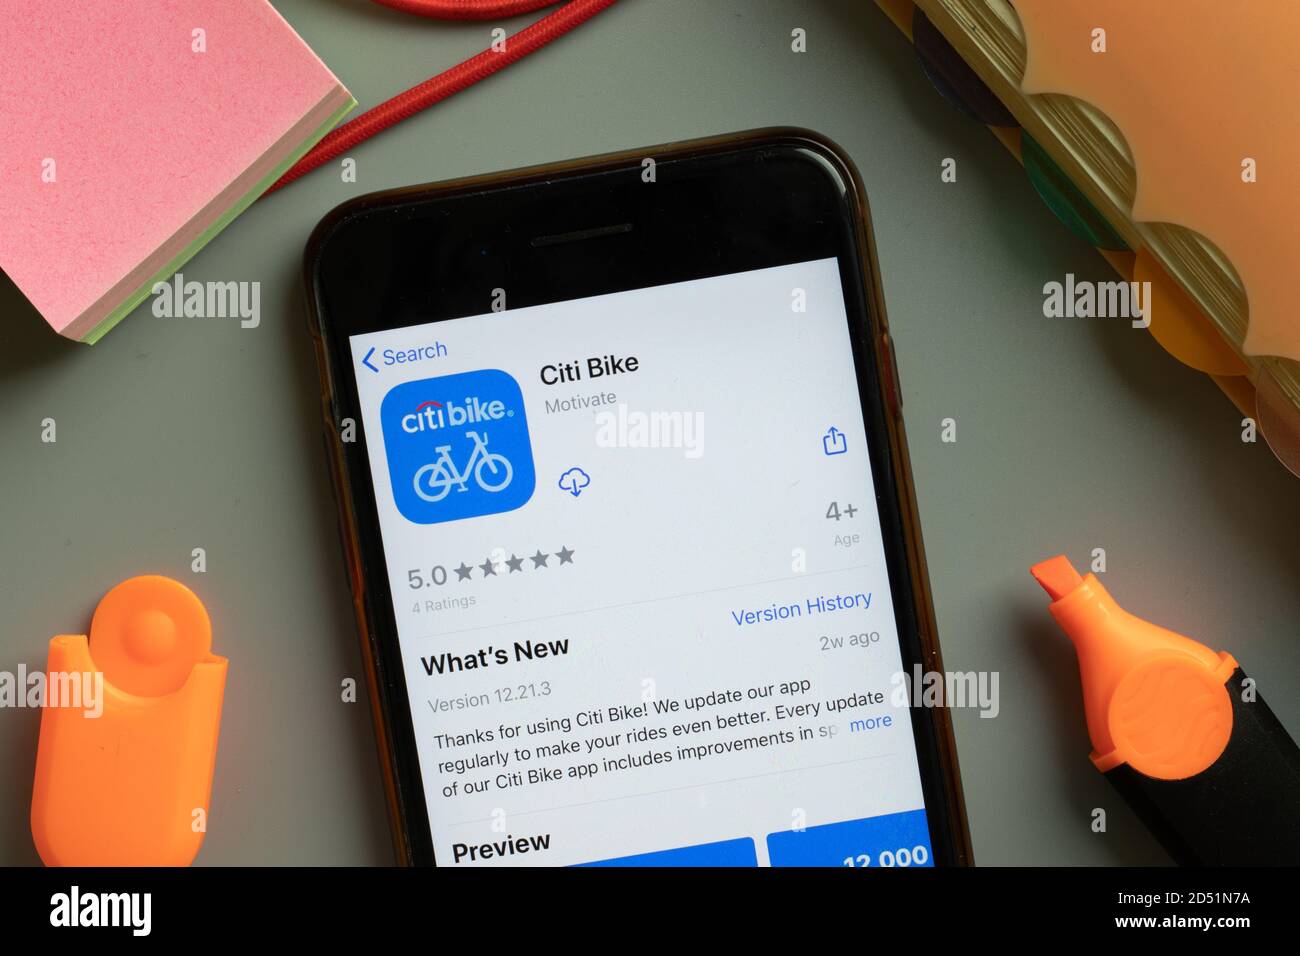 New York, USA - 29 settembre 2020: Logo dell'app mobile Citi Bike sullo schermo del telefono primo piano, editoriale illustrativo Foto Stock